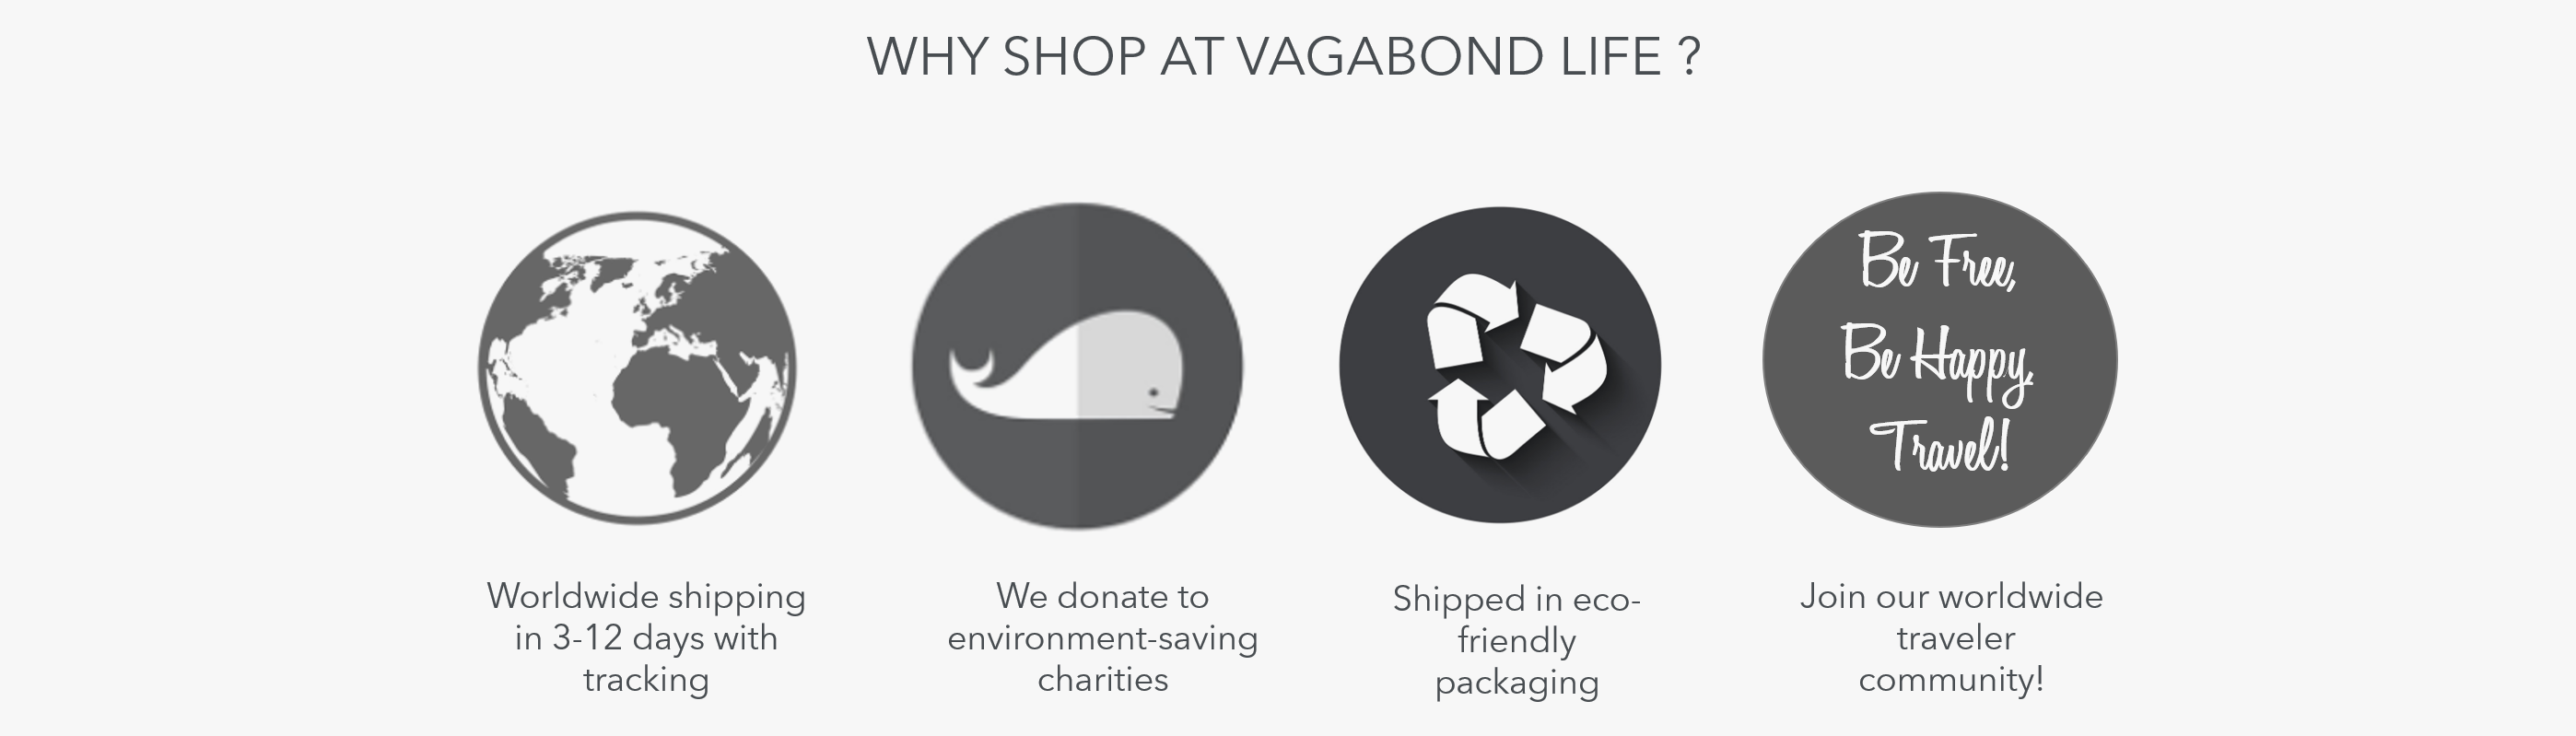 Why Shop At Vagabond Life